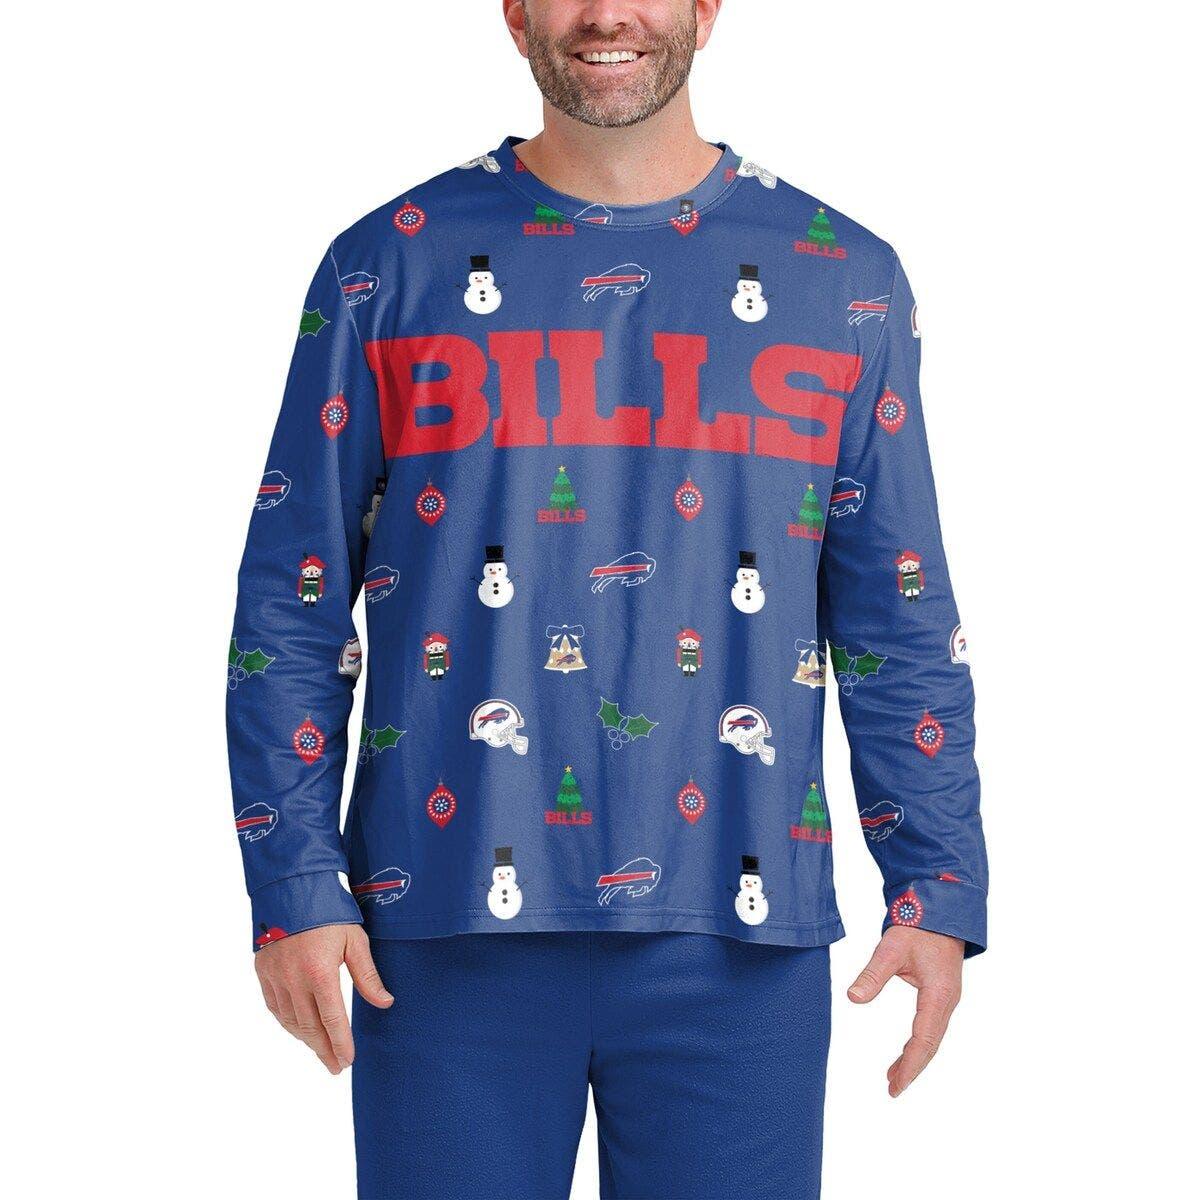 buffalo bills ugly sweater